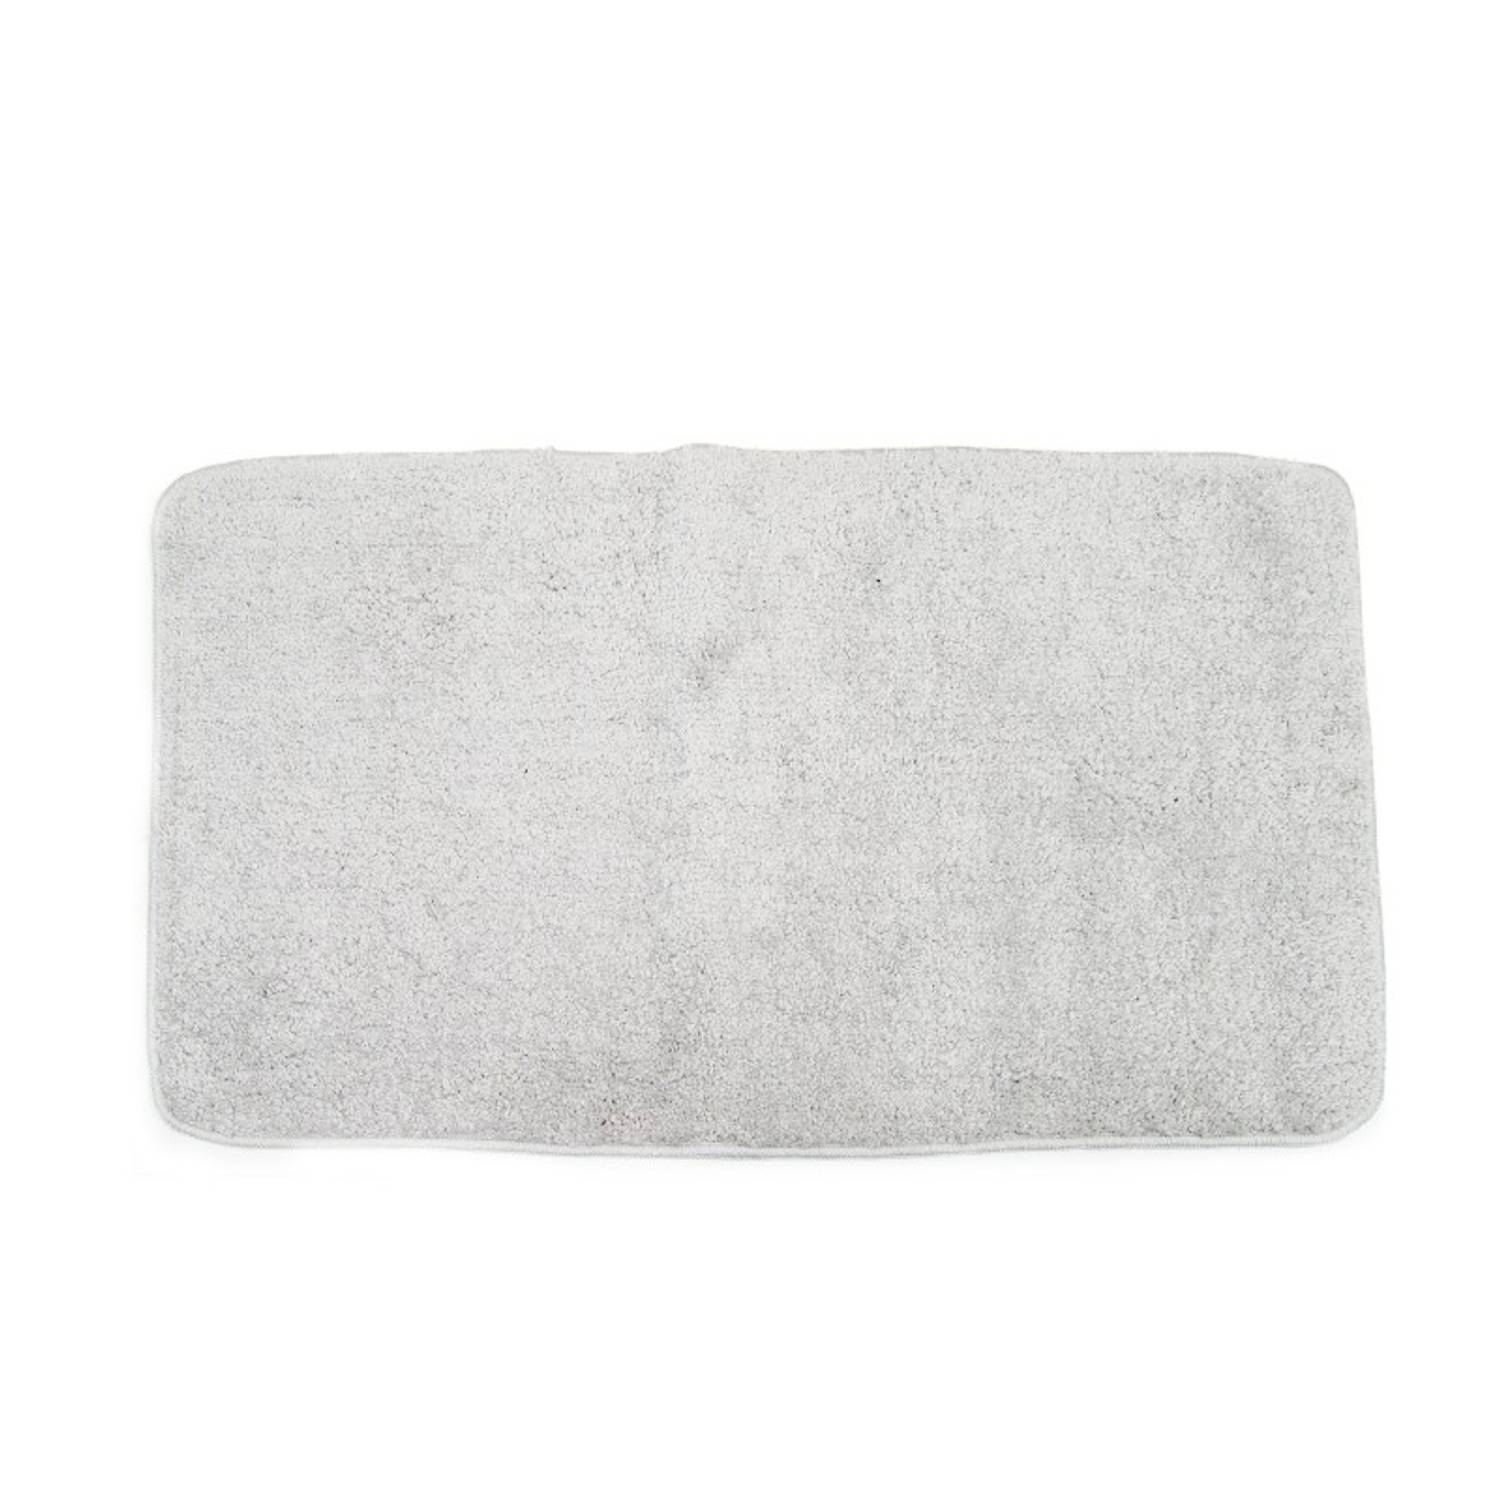 Magic mat extreem absorberende droogloopmat met antislip - Badkamermat - Geschikt voor huisdieren - Magic doormat - 75 x 45 x 4 cm licht grijs